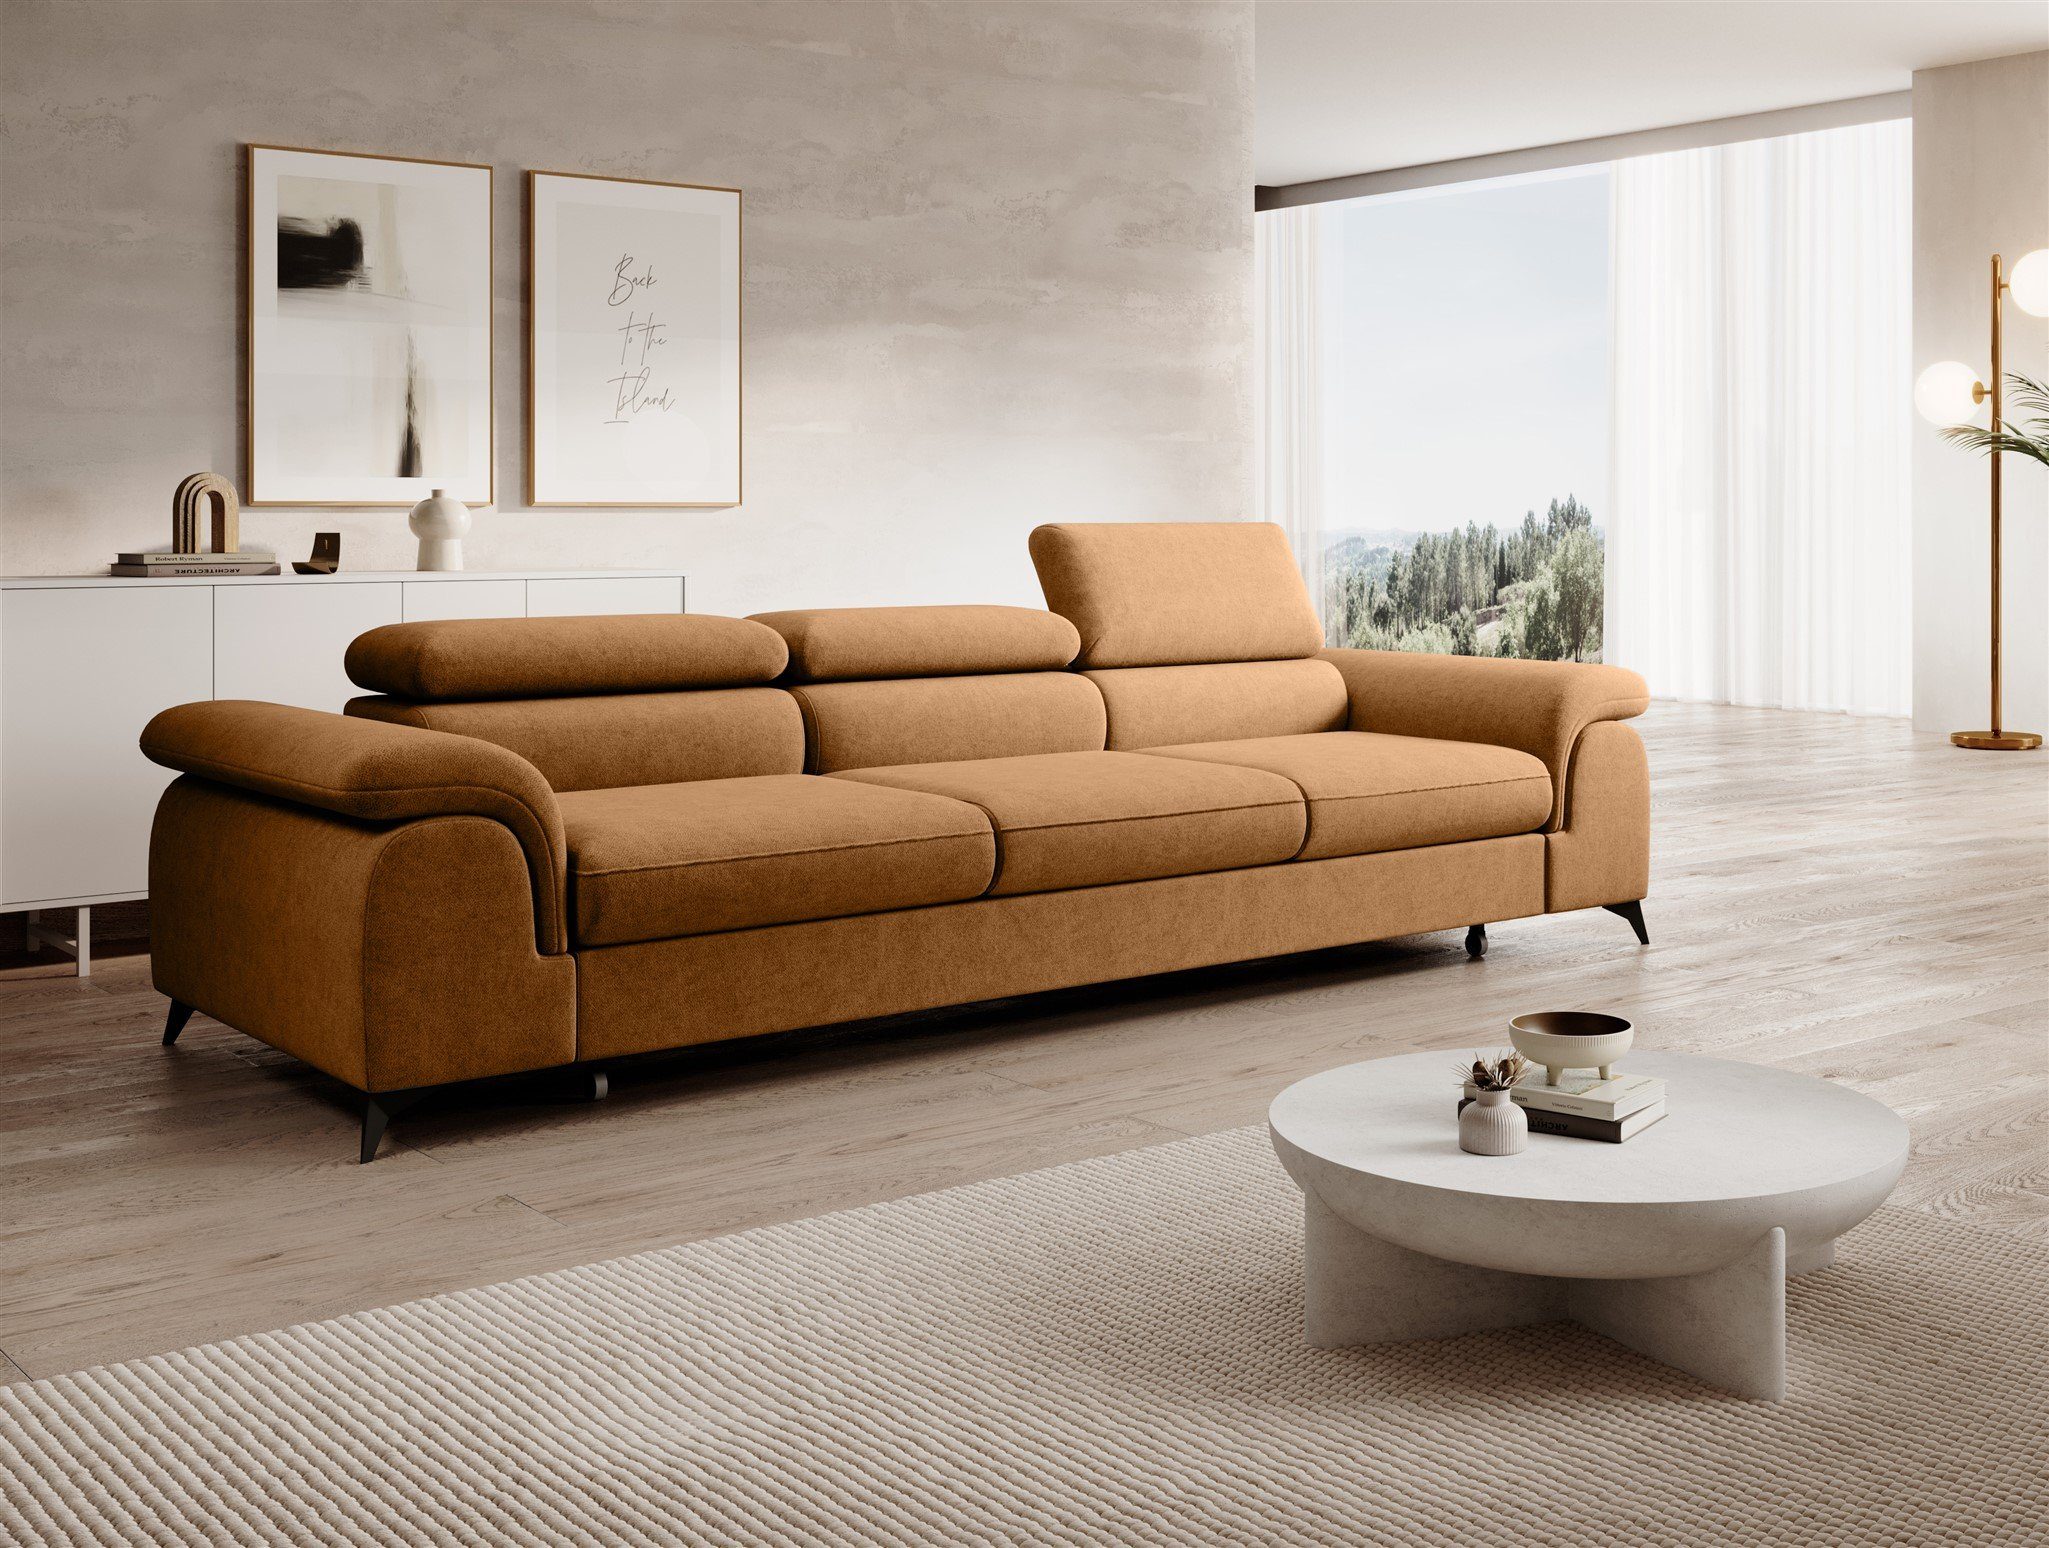 Fun Möbel Big-Sofa Couchgarnitur BASTIEN Megasofa mit Schlaffunktion Stoff Whisper, Kopfstützen verstellbar, Rundumbezug Amber